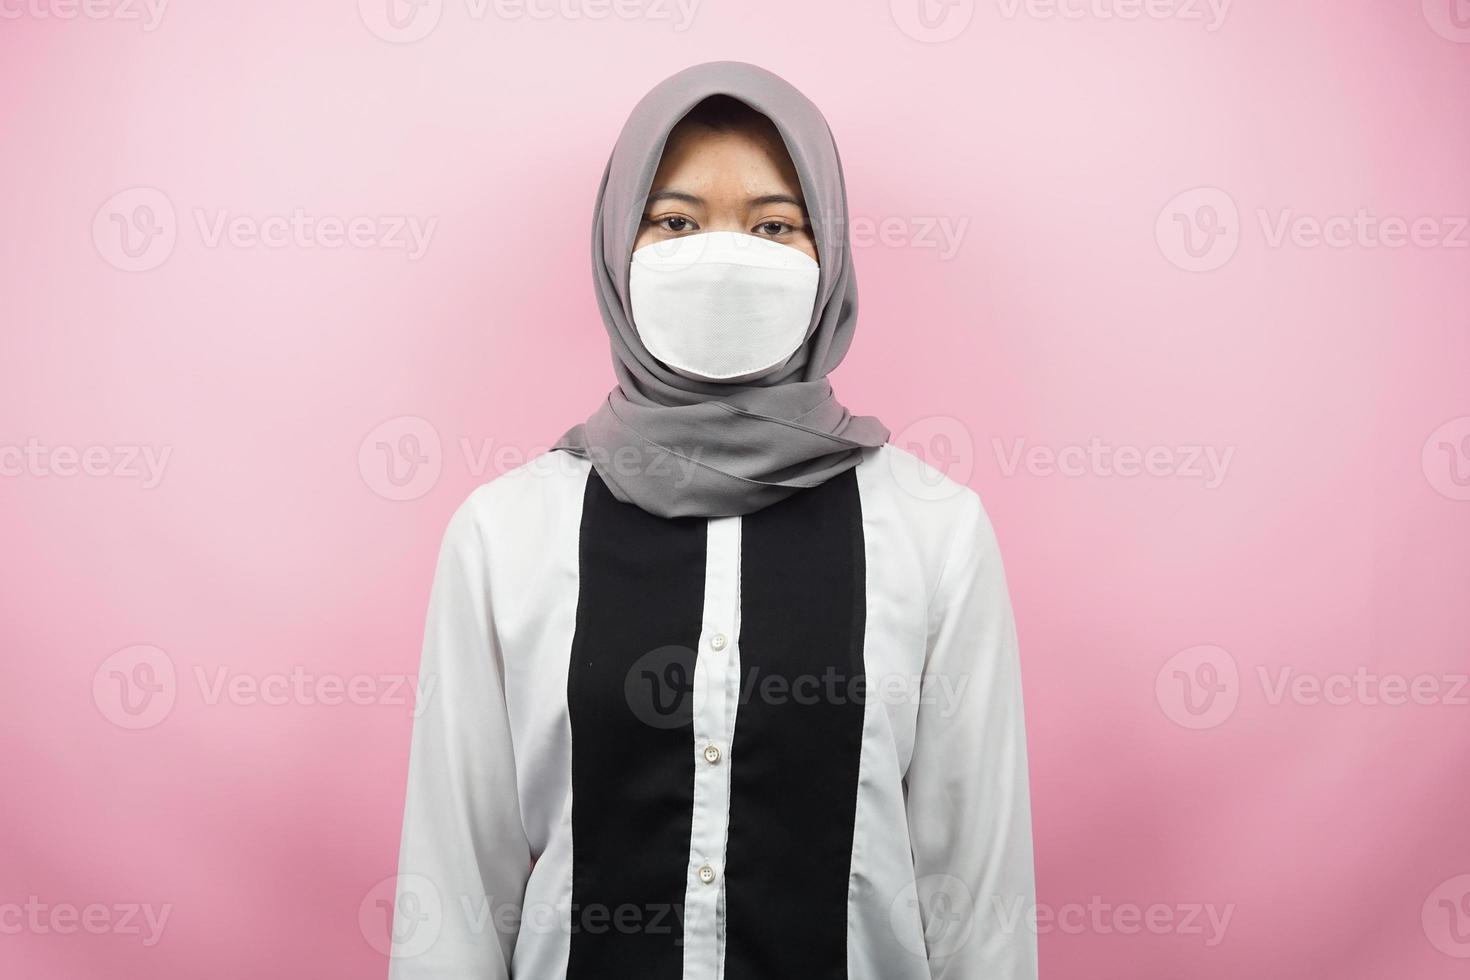 muslimsk kvinna som bär vita masker, anti-coronavirusrörelse, anti covid-19-rörelse, hälsorörelse som använder masker, isolerad på rosa bakgrund foto